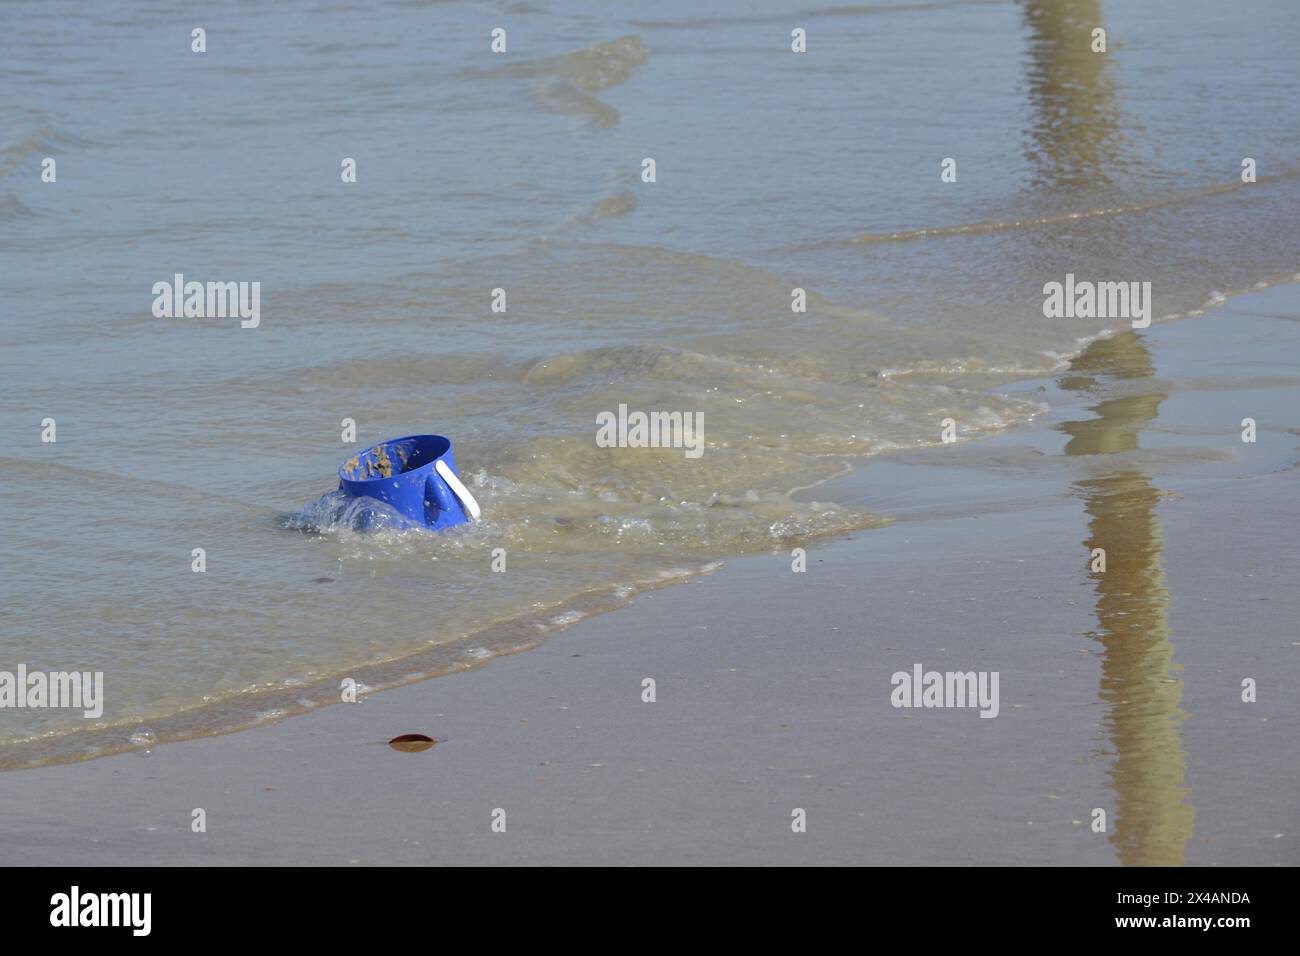 Ein verlassener blauer Eimer liegt zu drei Vierteln im Sand in der Nähe des Meeres, wo einfallende Wellen Reflexionen am Sandstrand erzeugen. Stockfoto